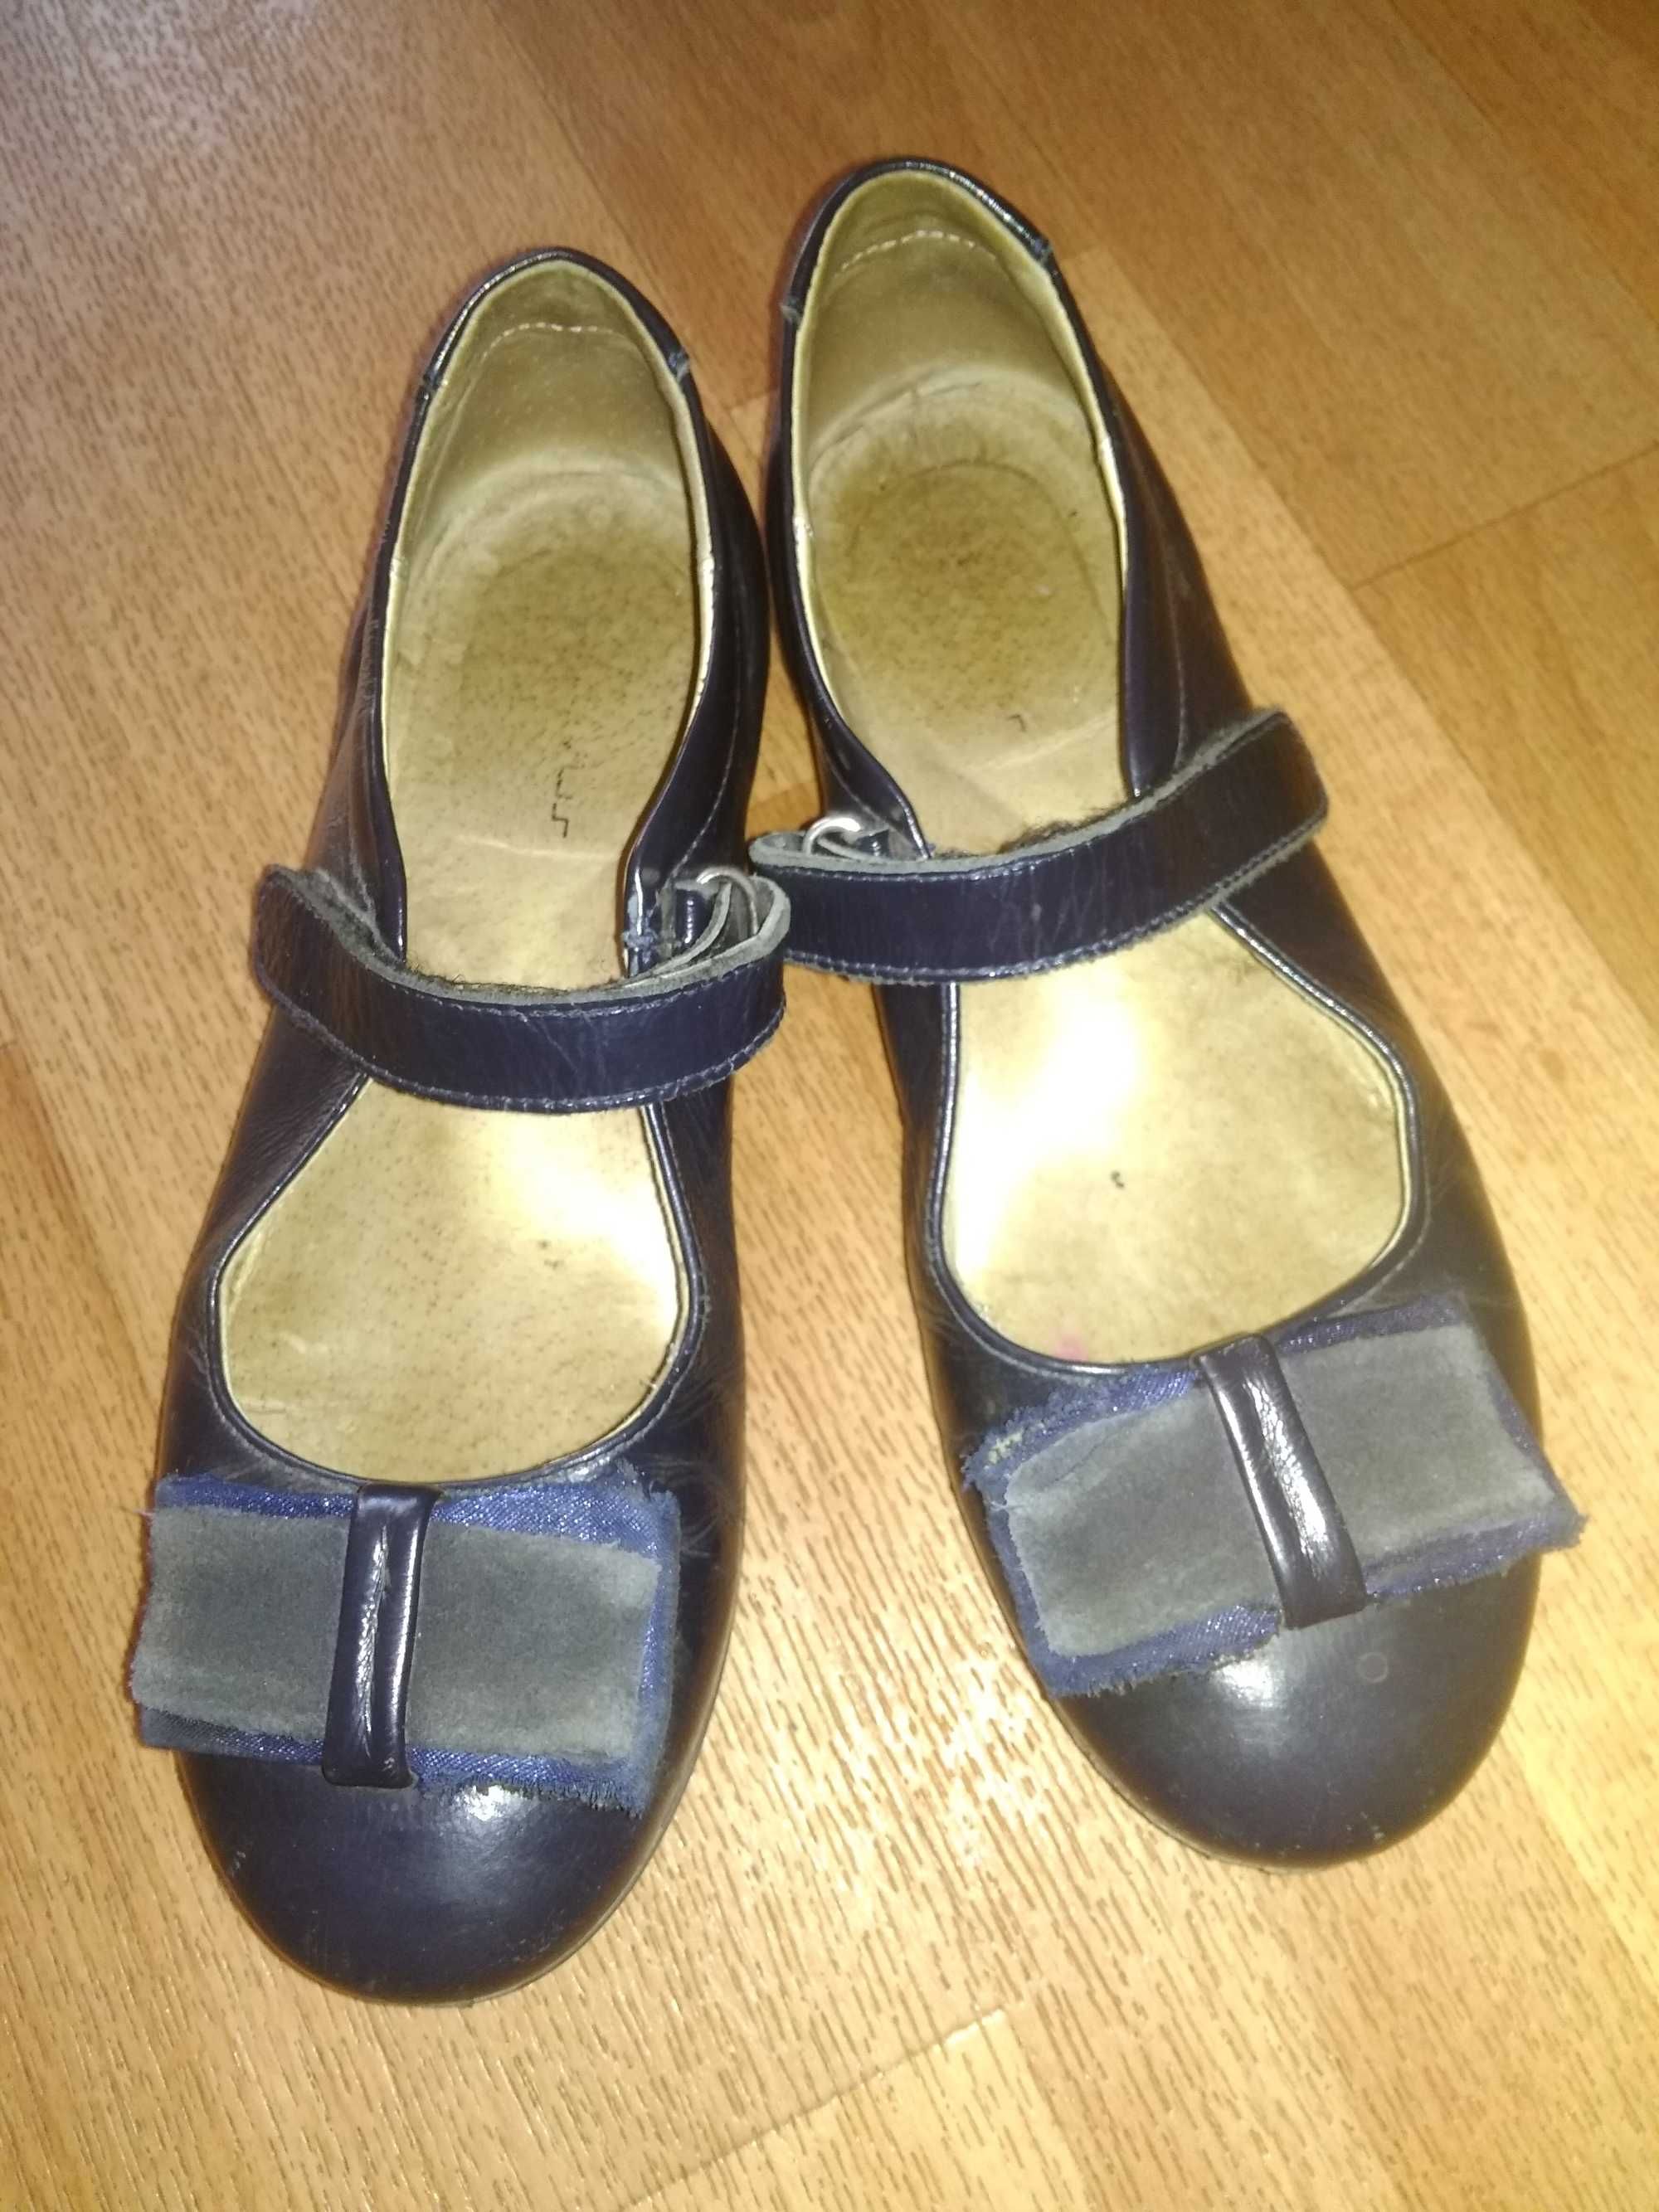 Продам туфли школьные темно синего цвета натуральная кожа р.32  100грн